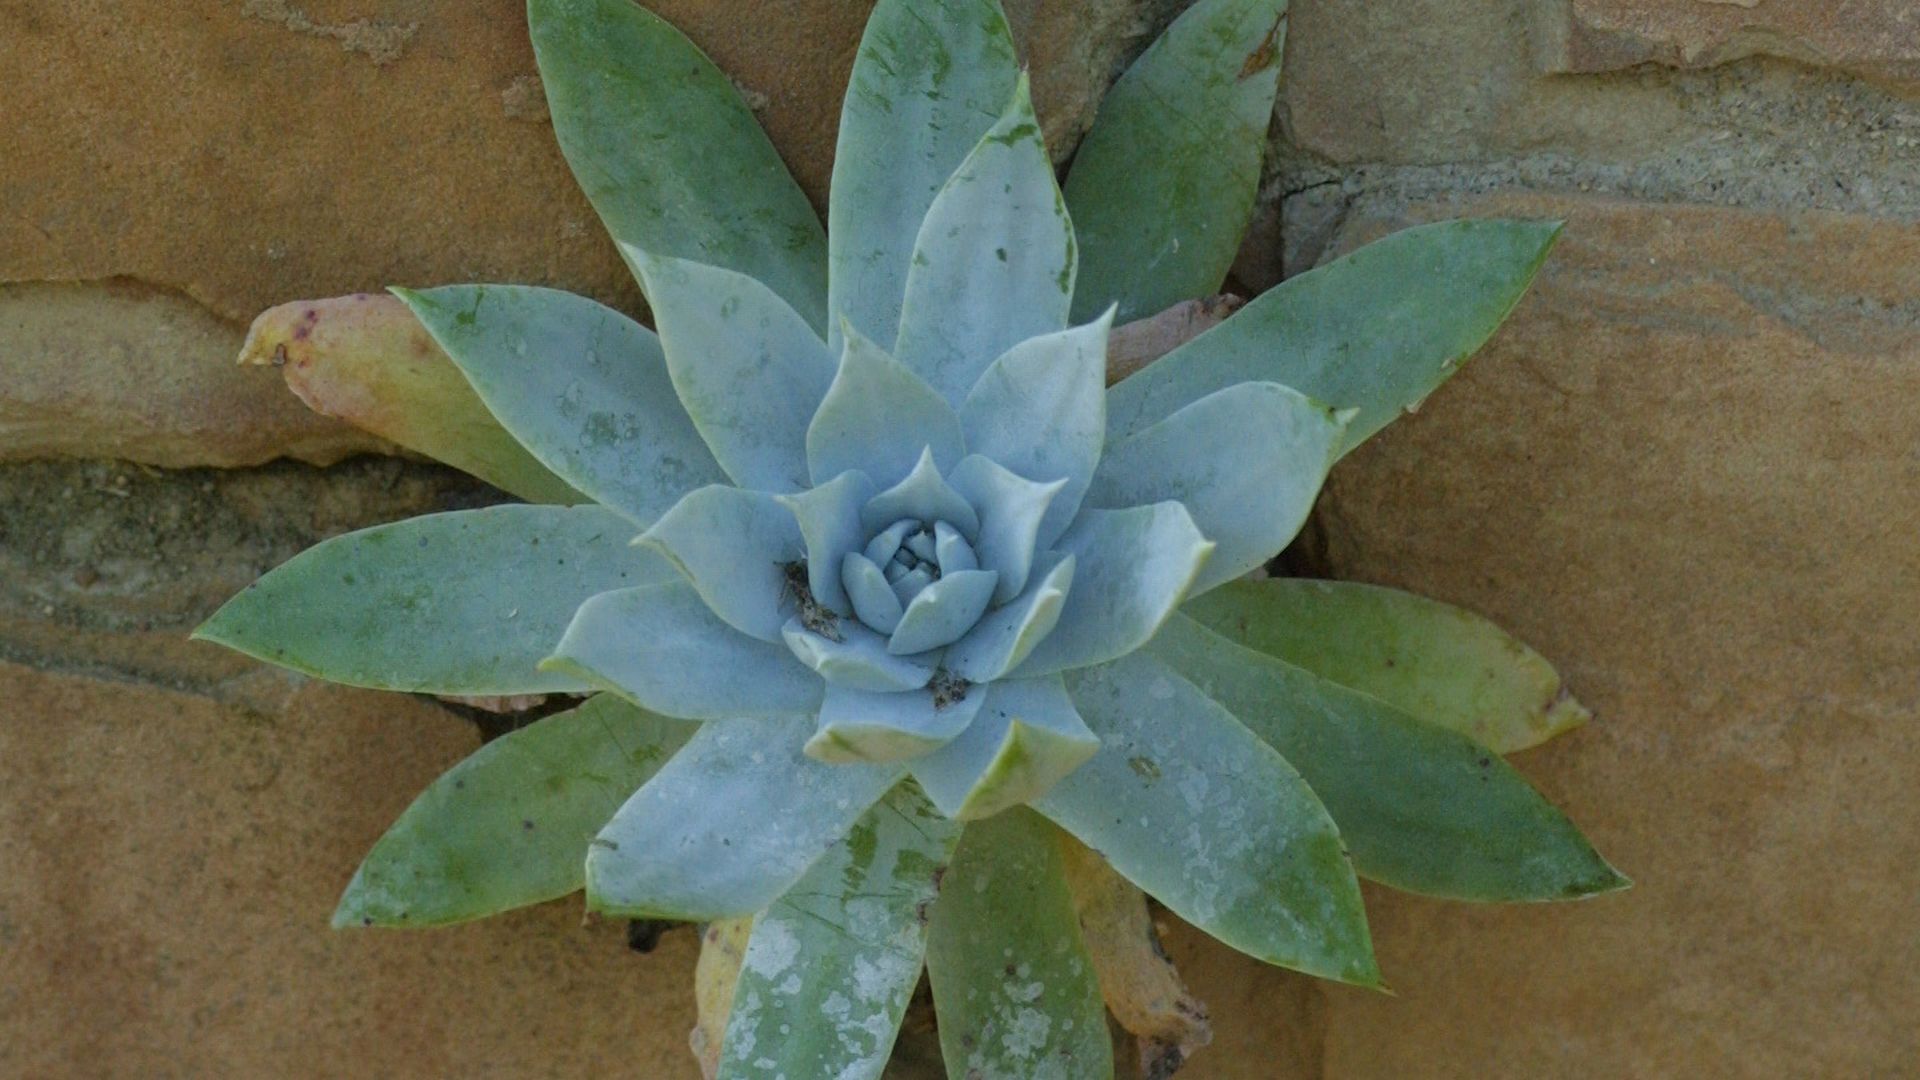 A dudleya plant